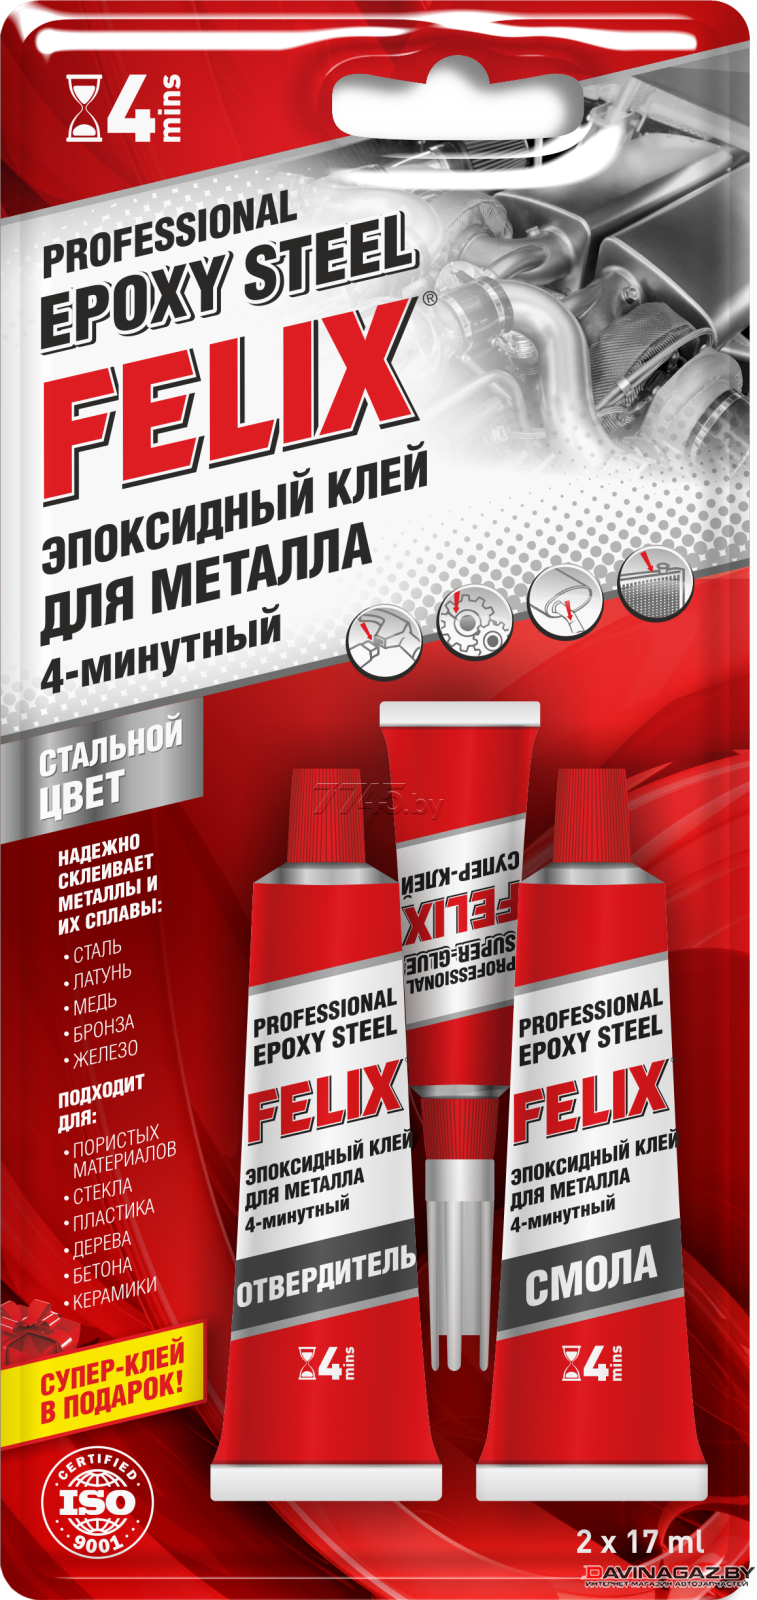 FELIX - 4-минутный эпоксидный клей для металла, 34г / 411040063